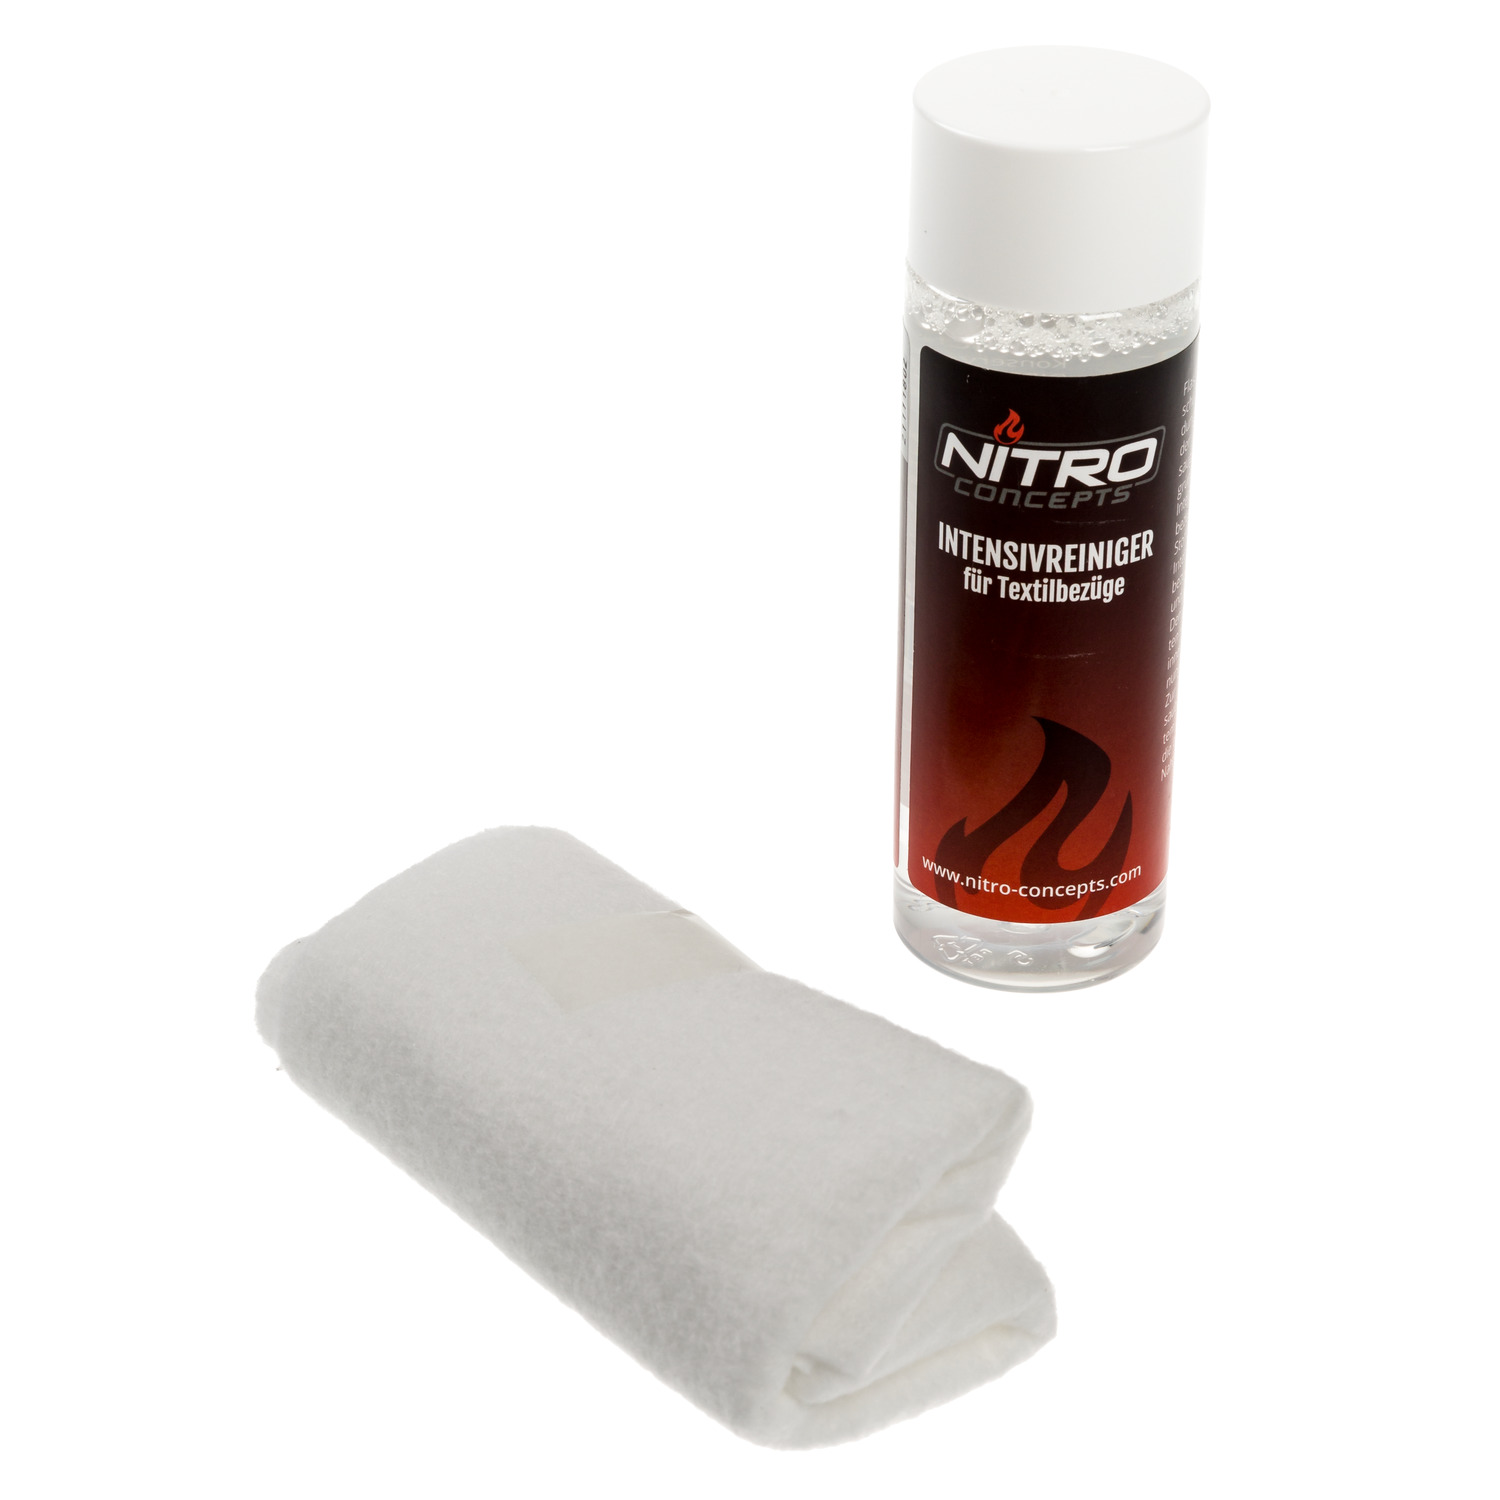 nitro-concepts - Textilreiniger inkl. Reinigungstuch - 100ml